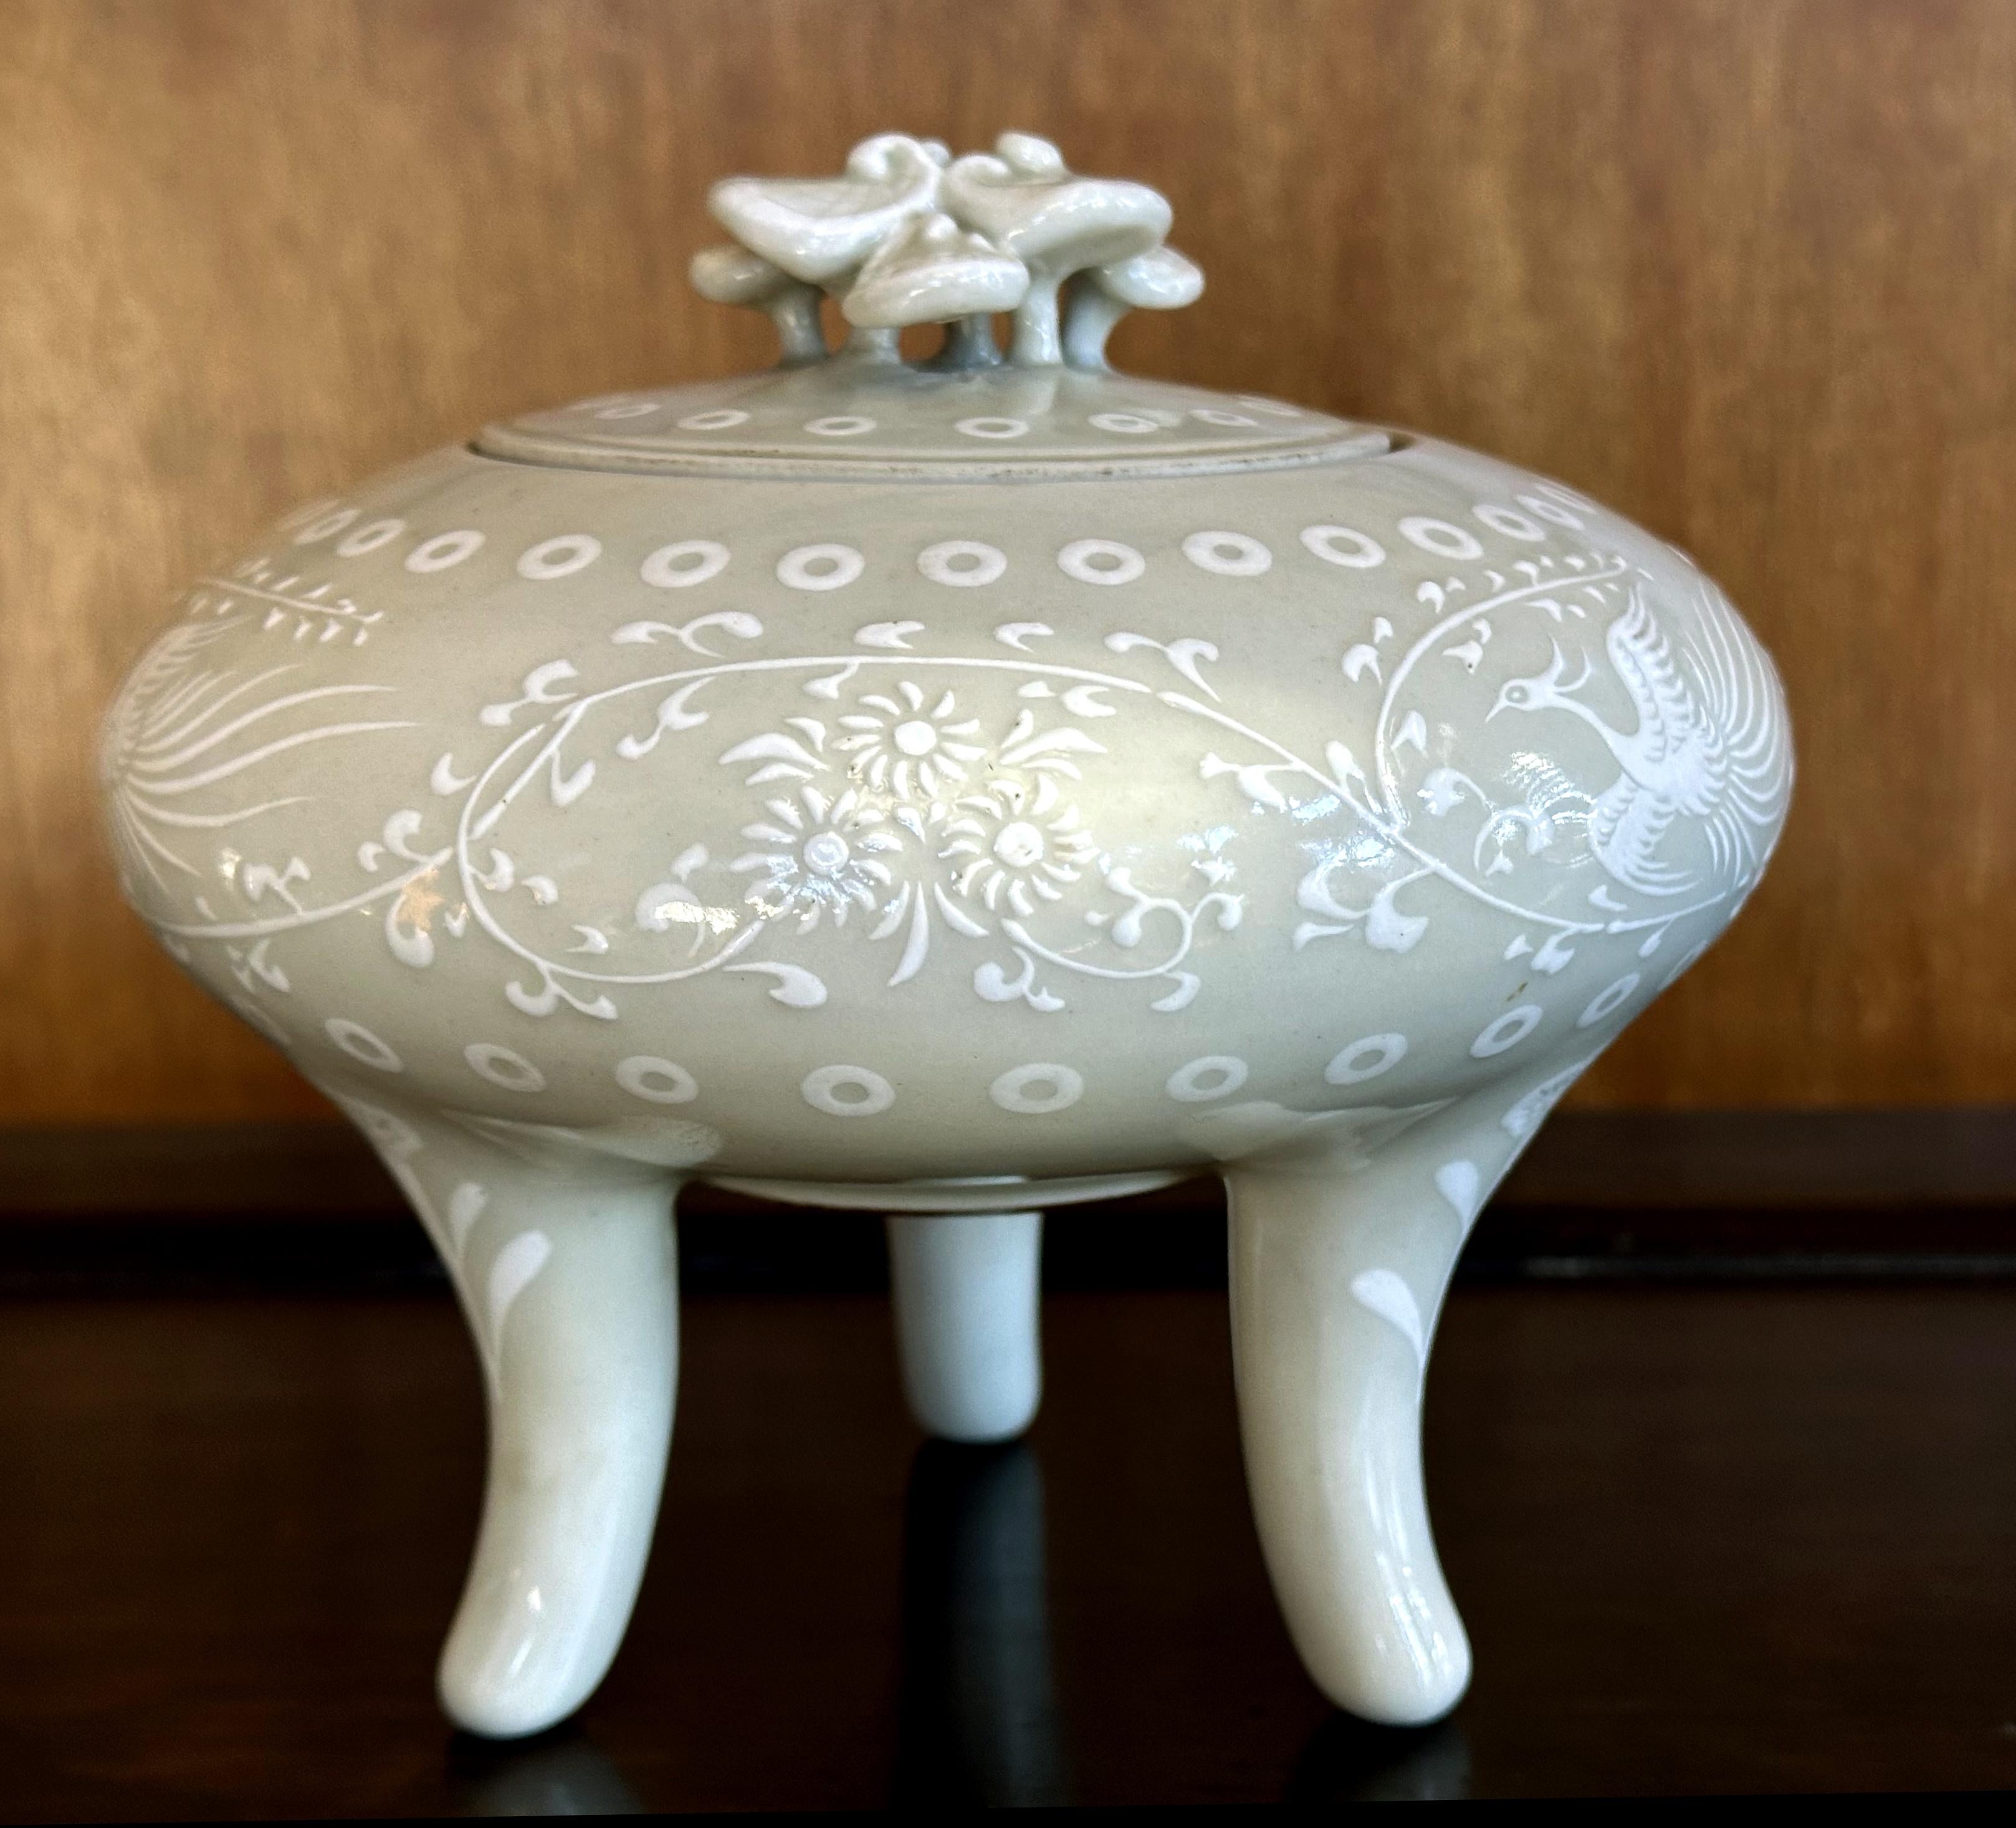 Brûleur d'encens en porcelaine (koro) réalisé par le potier japonais Makuzu Kozan (également connu sous le nom de Miyagawa Kozan, 1842-1916) vers les années 1890-1900 (fin de la période Meiji). Le koro présente une forme élégante avec un corps